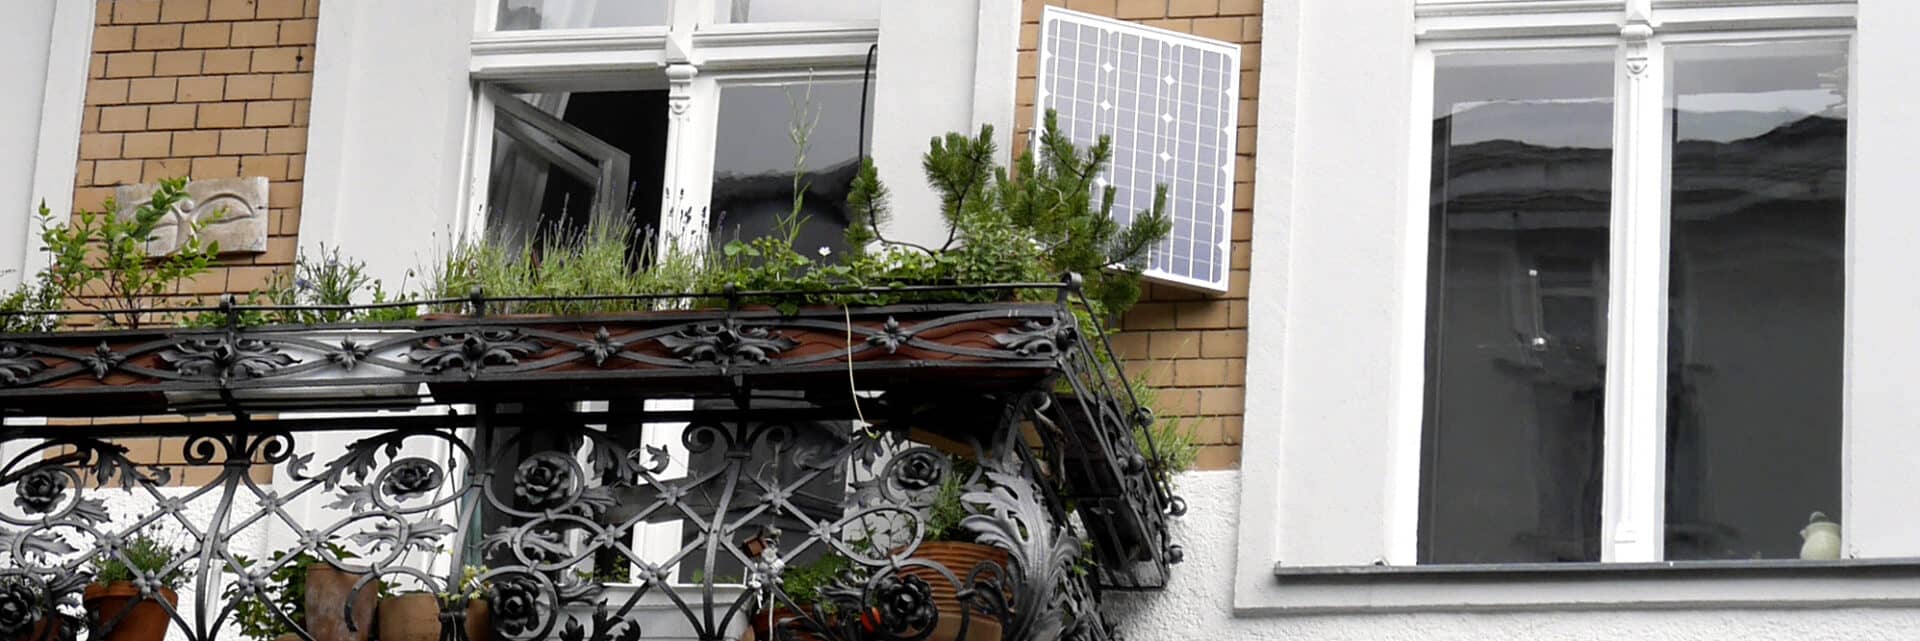 Erneuerbare Energie: Fassade mit Stecker-PV-Gerät